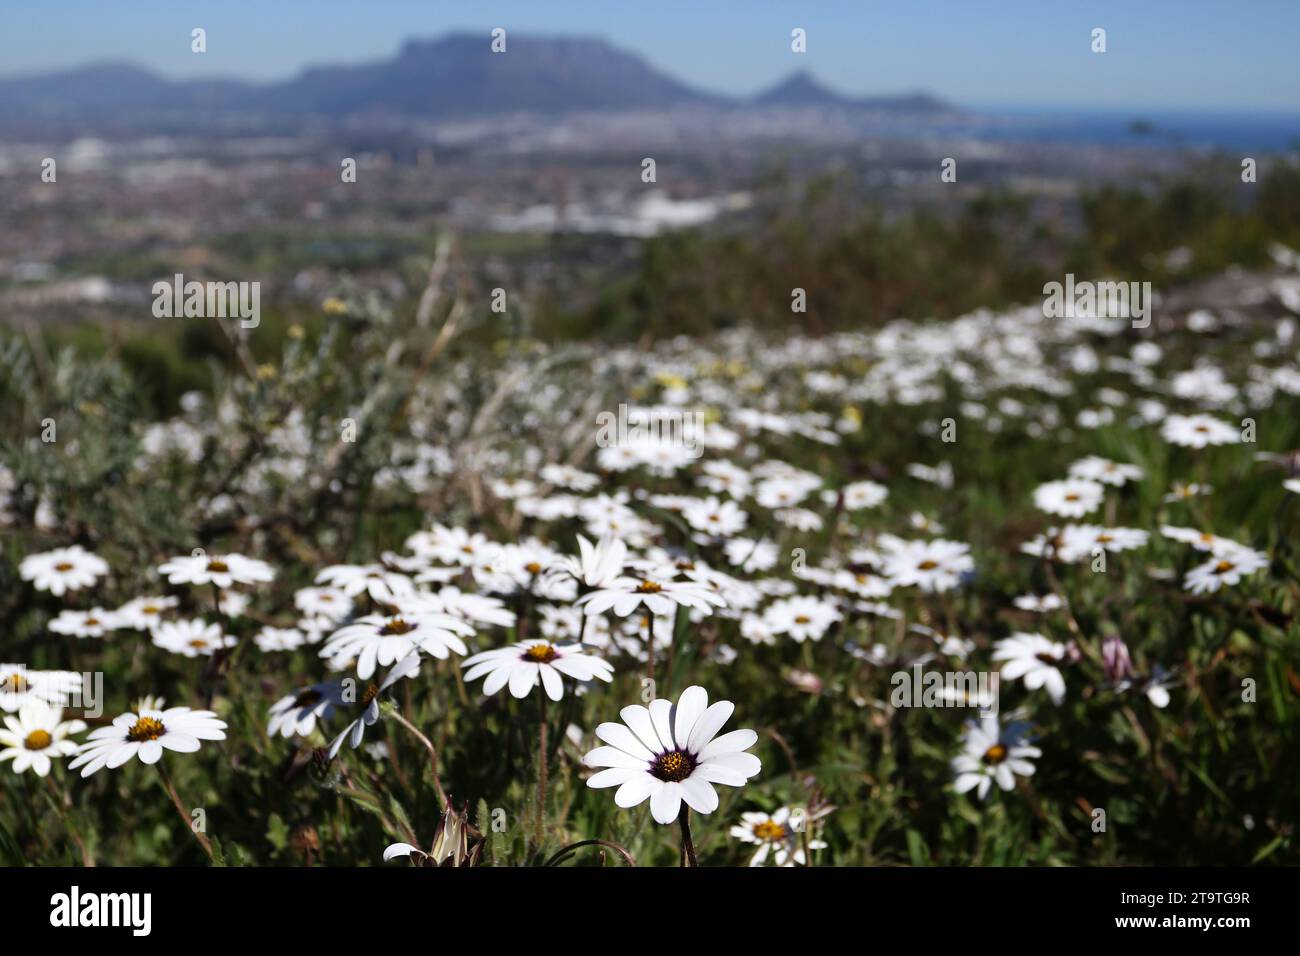 Wilde Blumen blühen auf dem Tygerberg Hill, wo der Tafelberg in der Ferne zu sehen ist Stockfoto